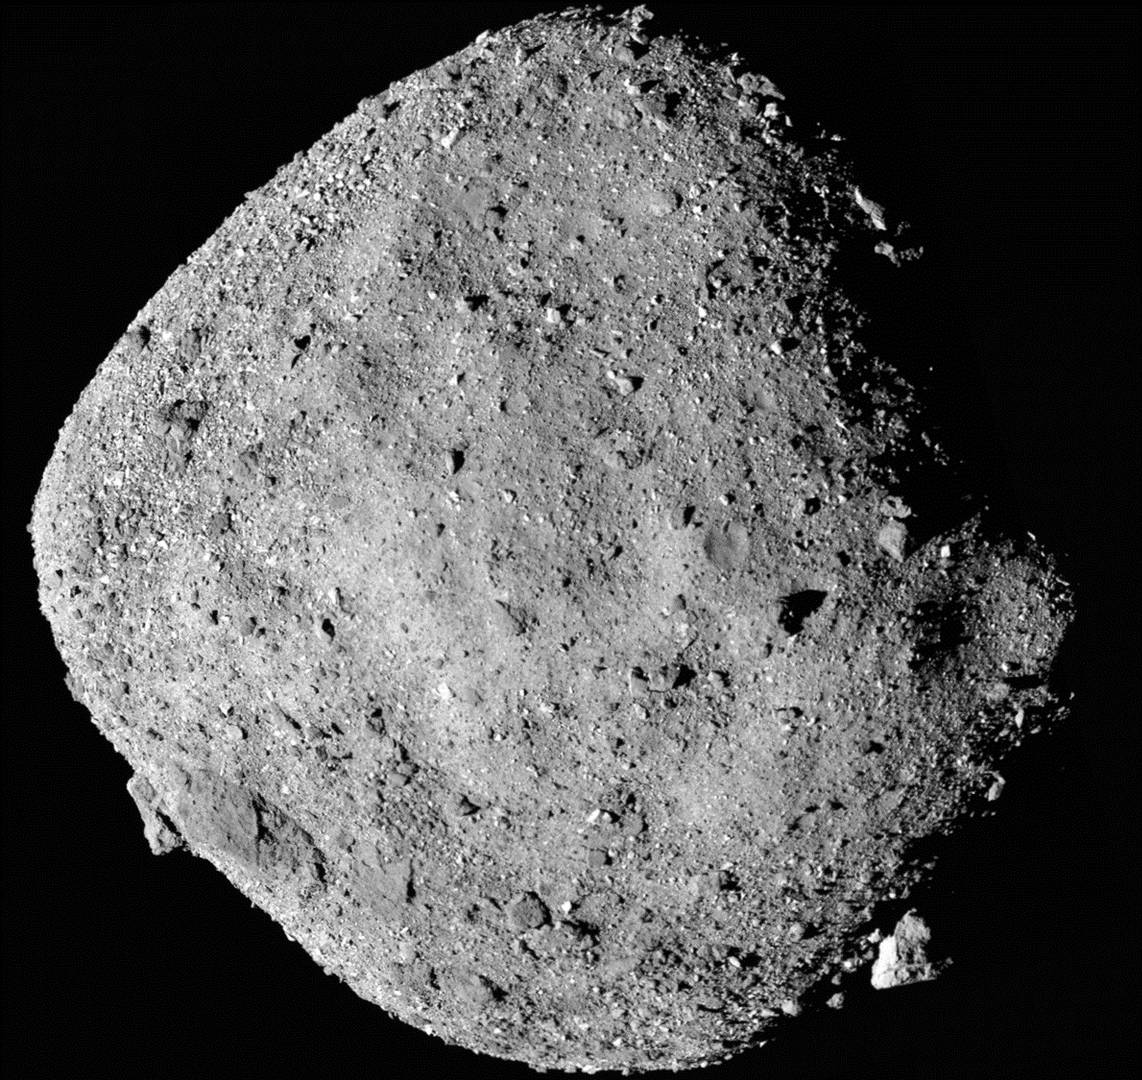 Фотография астероида (101955) Бенну, полученное зондом OSIRIS-REx 2 декабря 2018 года с расстояния 24 км